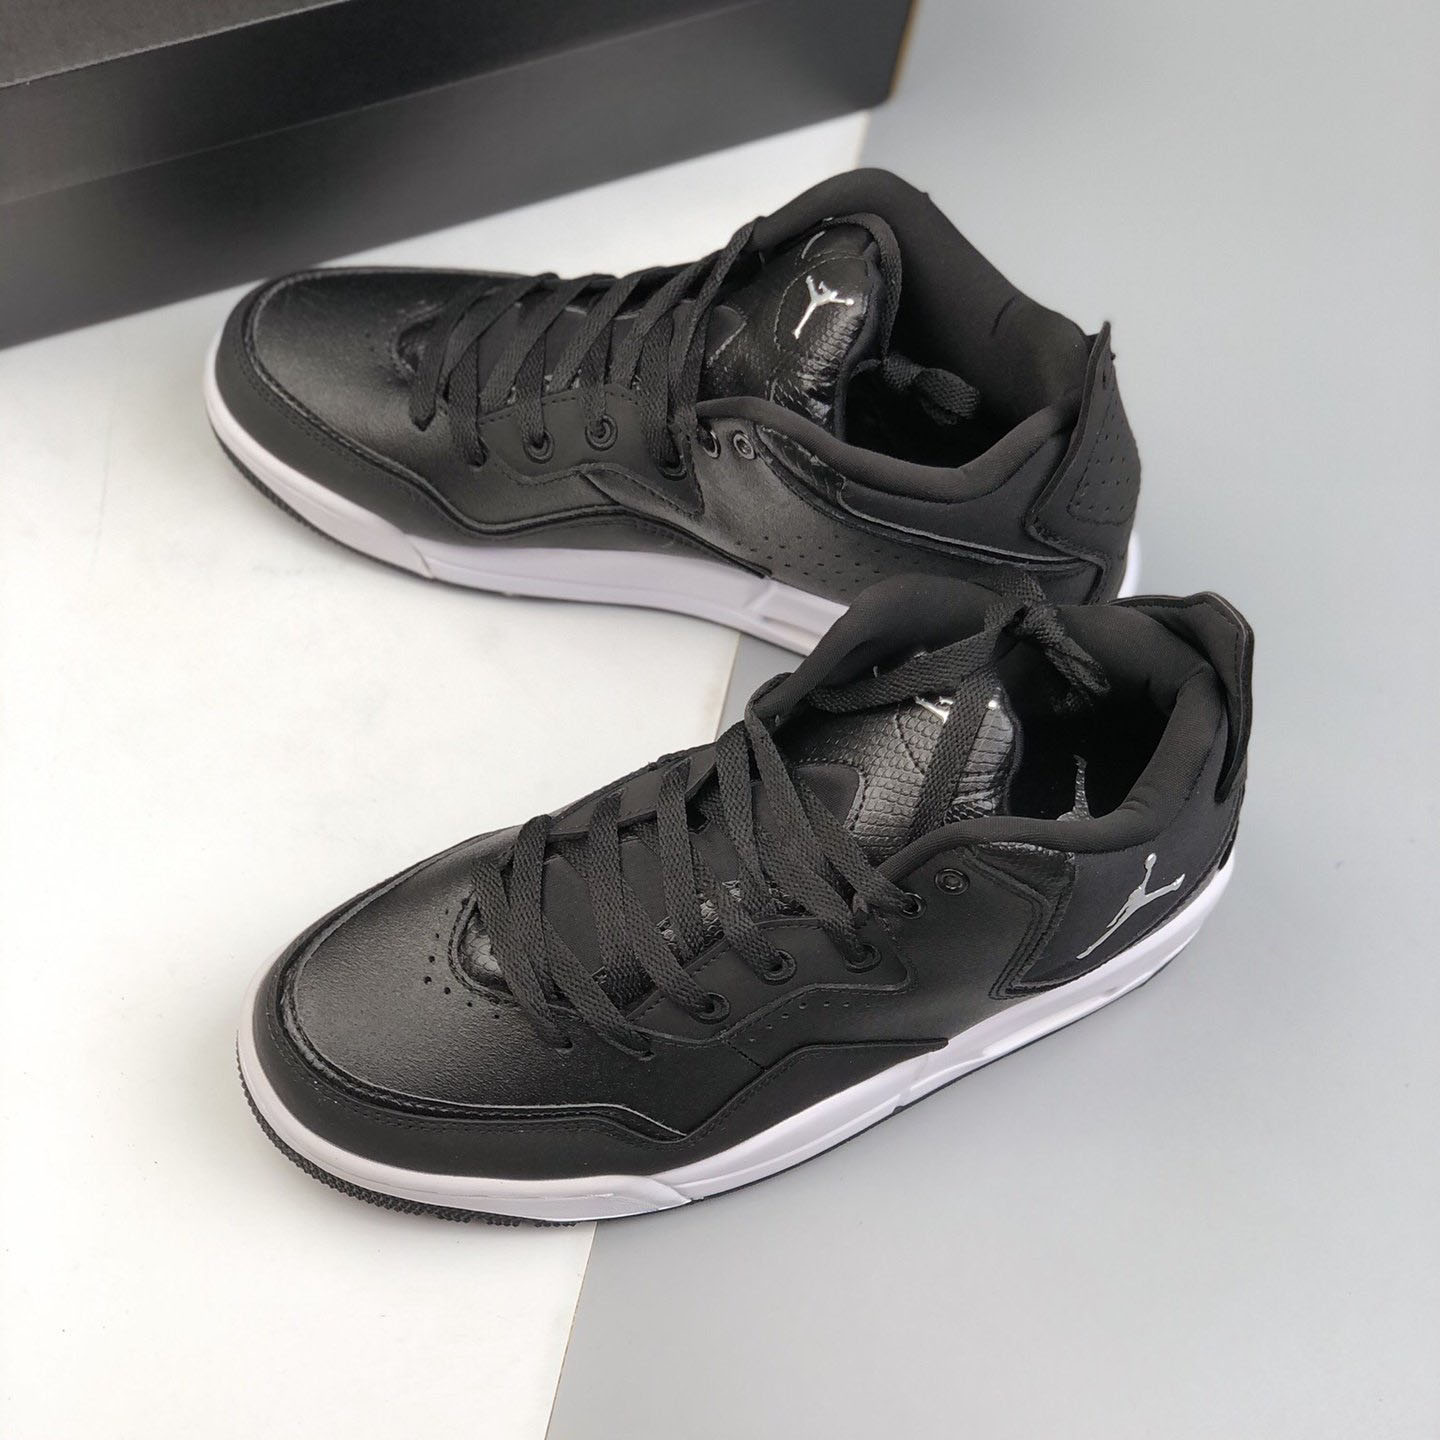 Original New Arrival Nike Air Jordan 3 